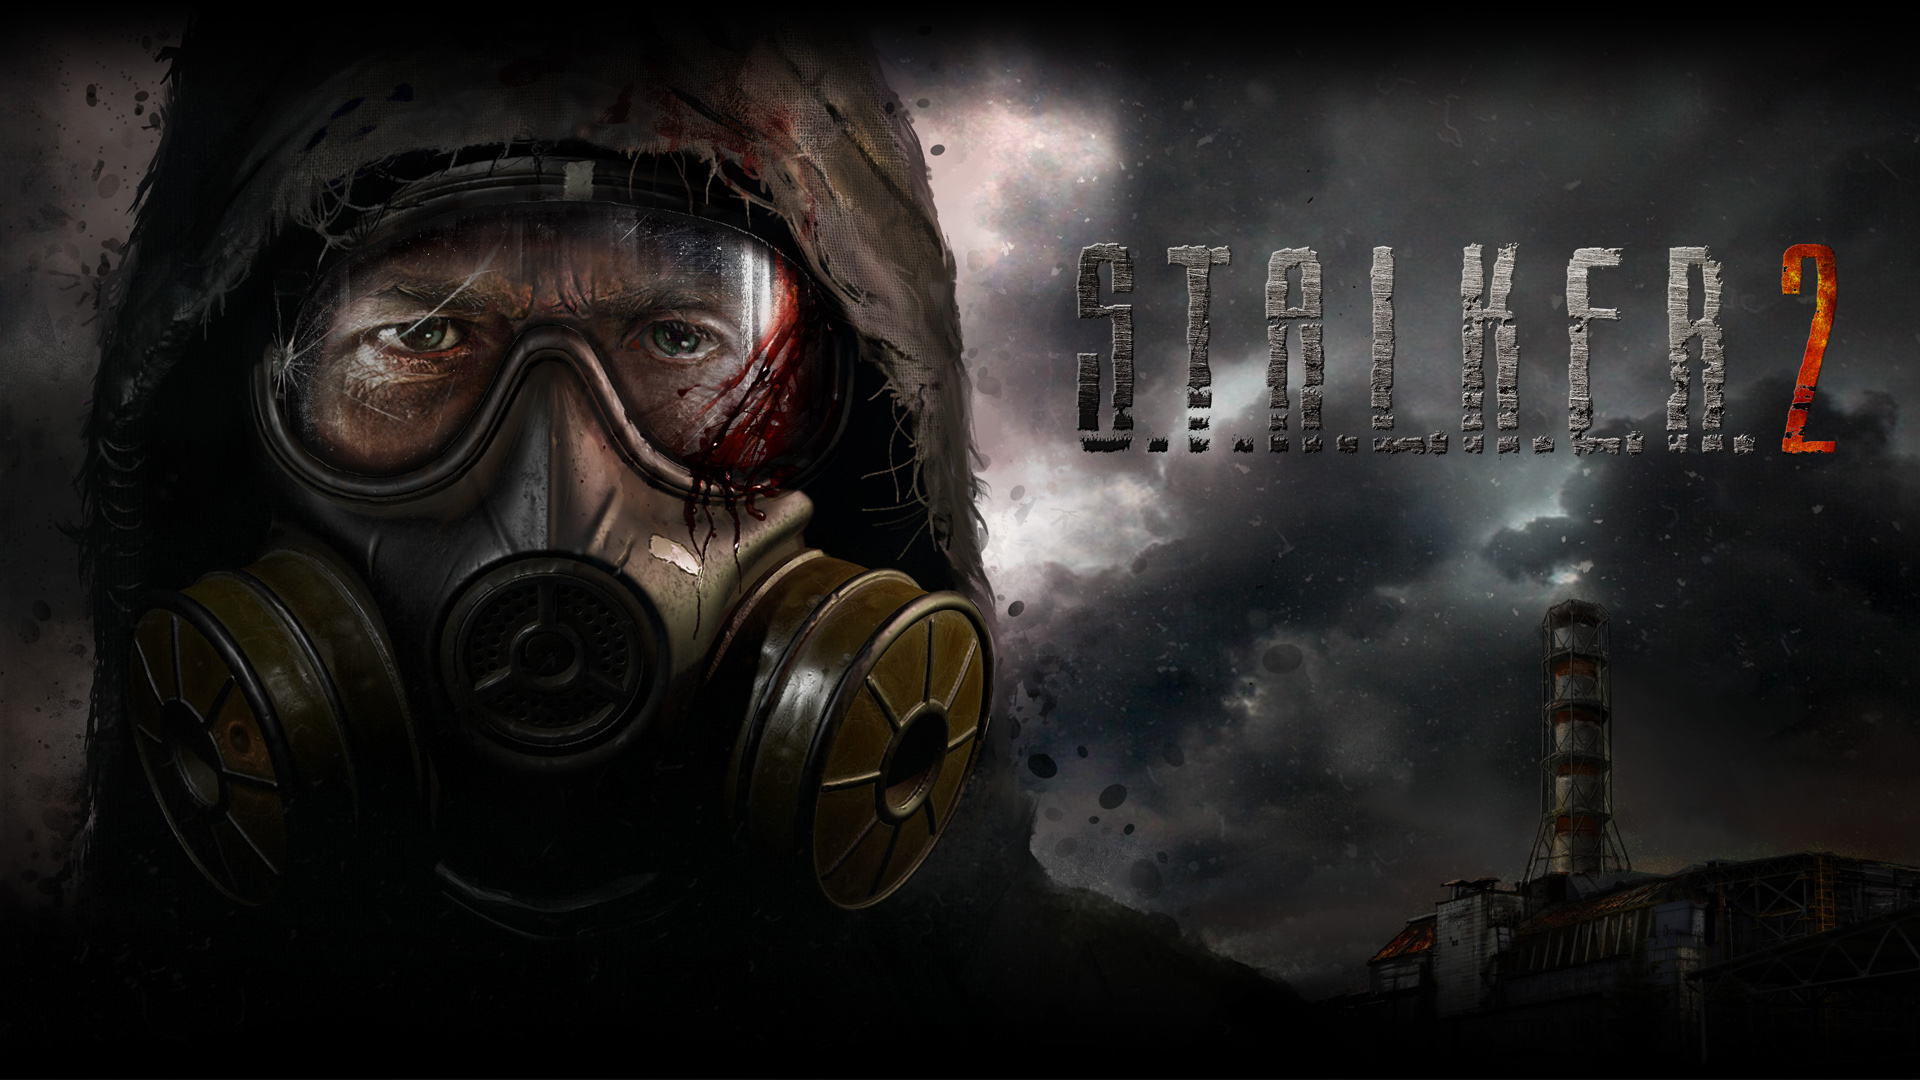 S.T.A.L.K.E.R. возвращается: разработчики опубликовали первый постер и саундтрек к игре - фото 1